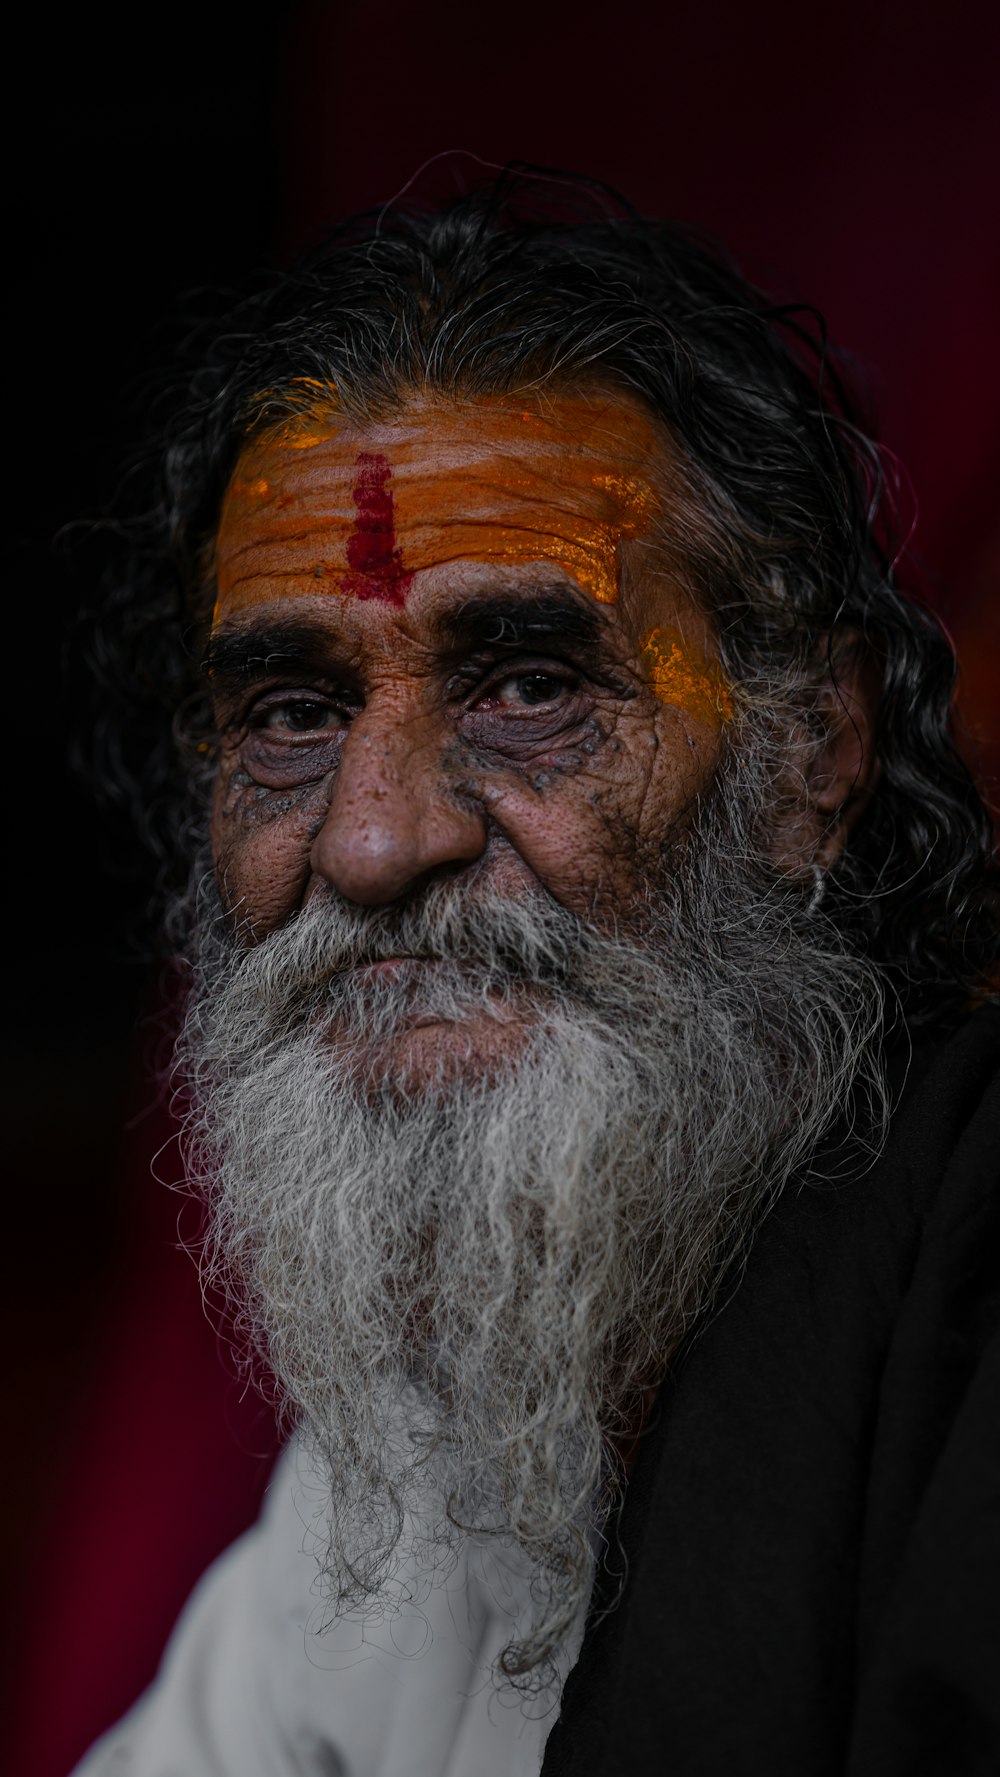 Un homme avec une barbe blanche et une croix rouge sur le front